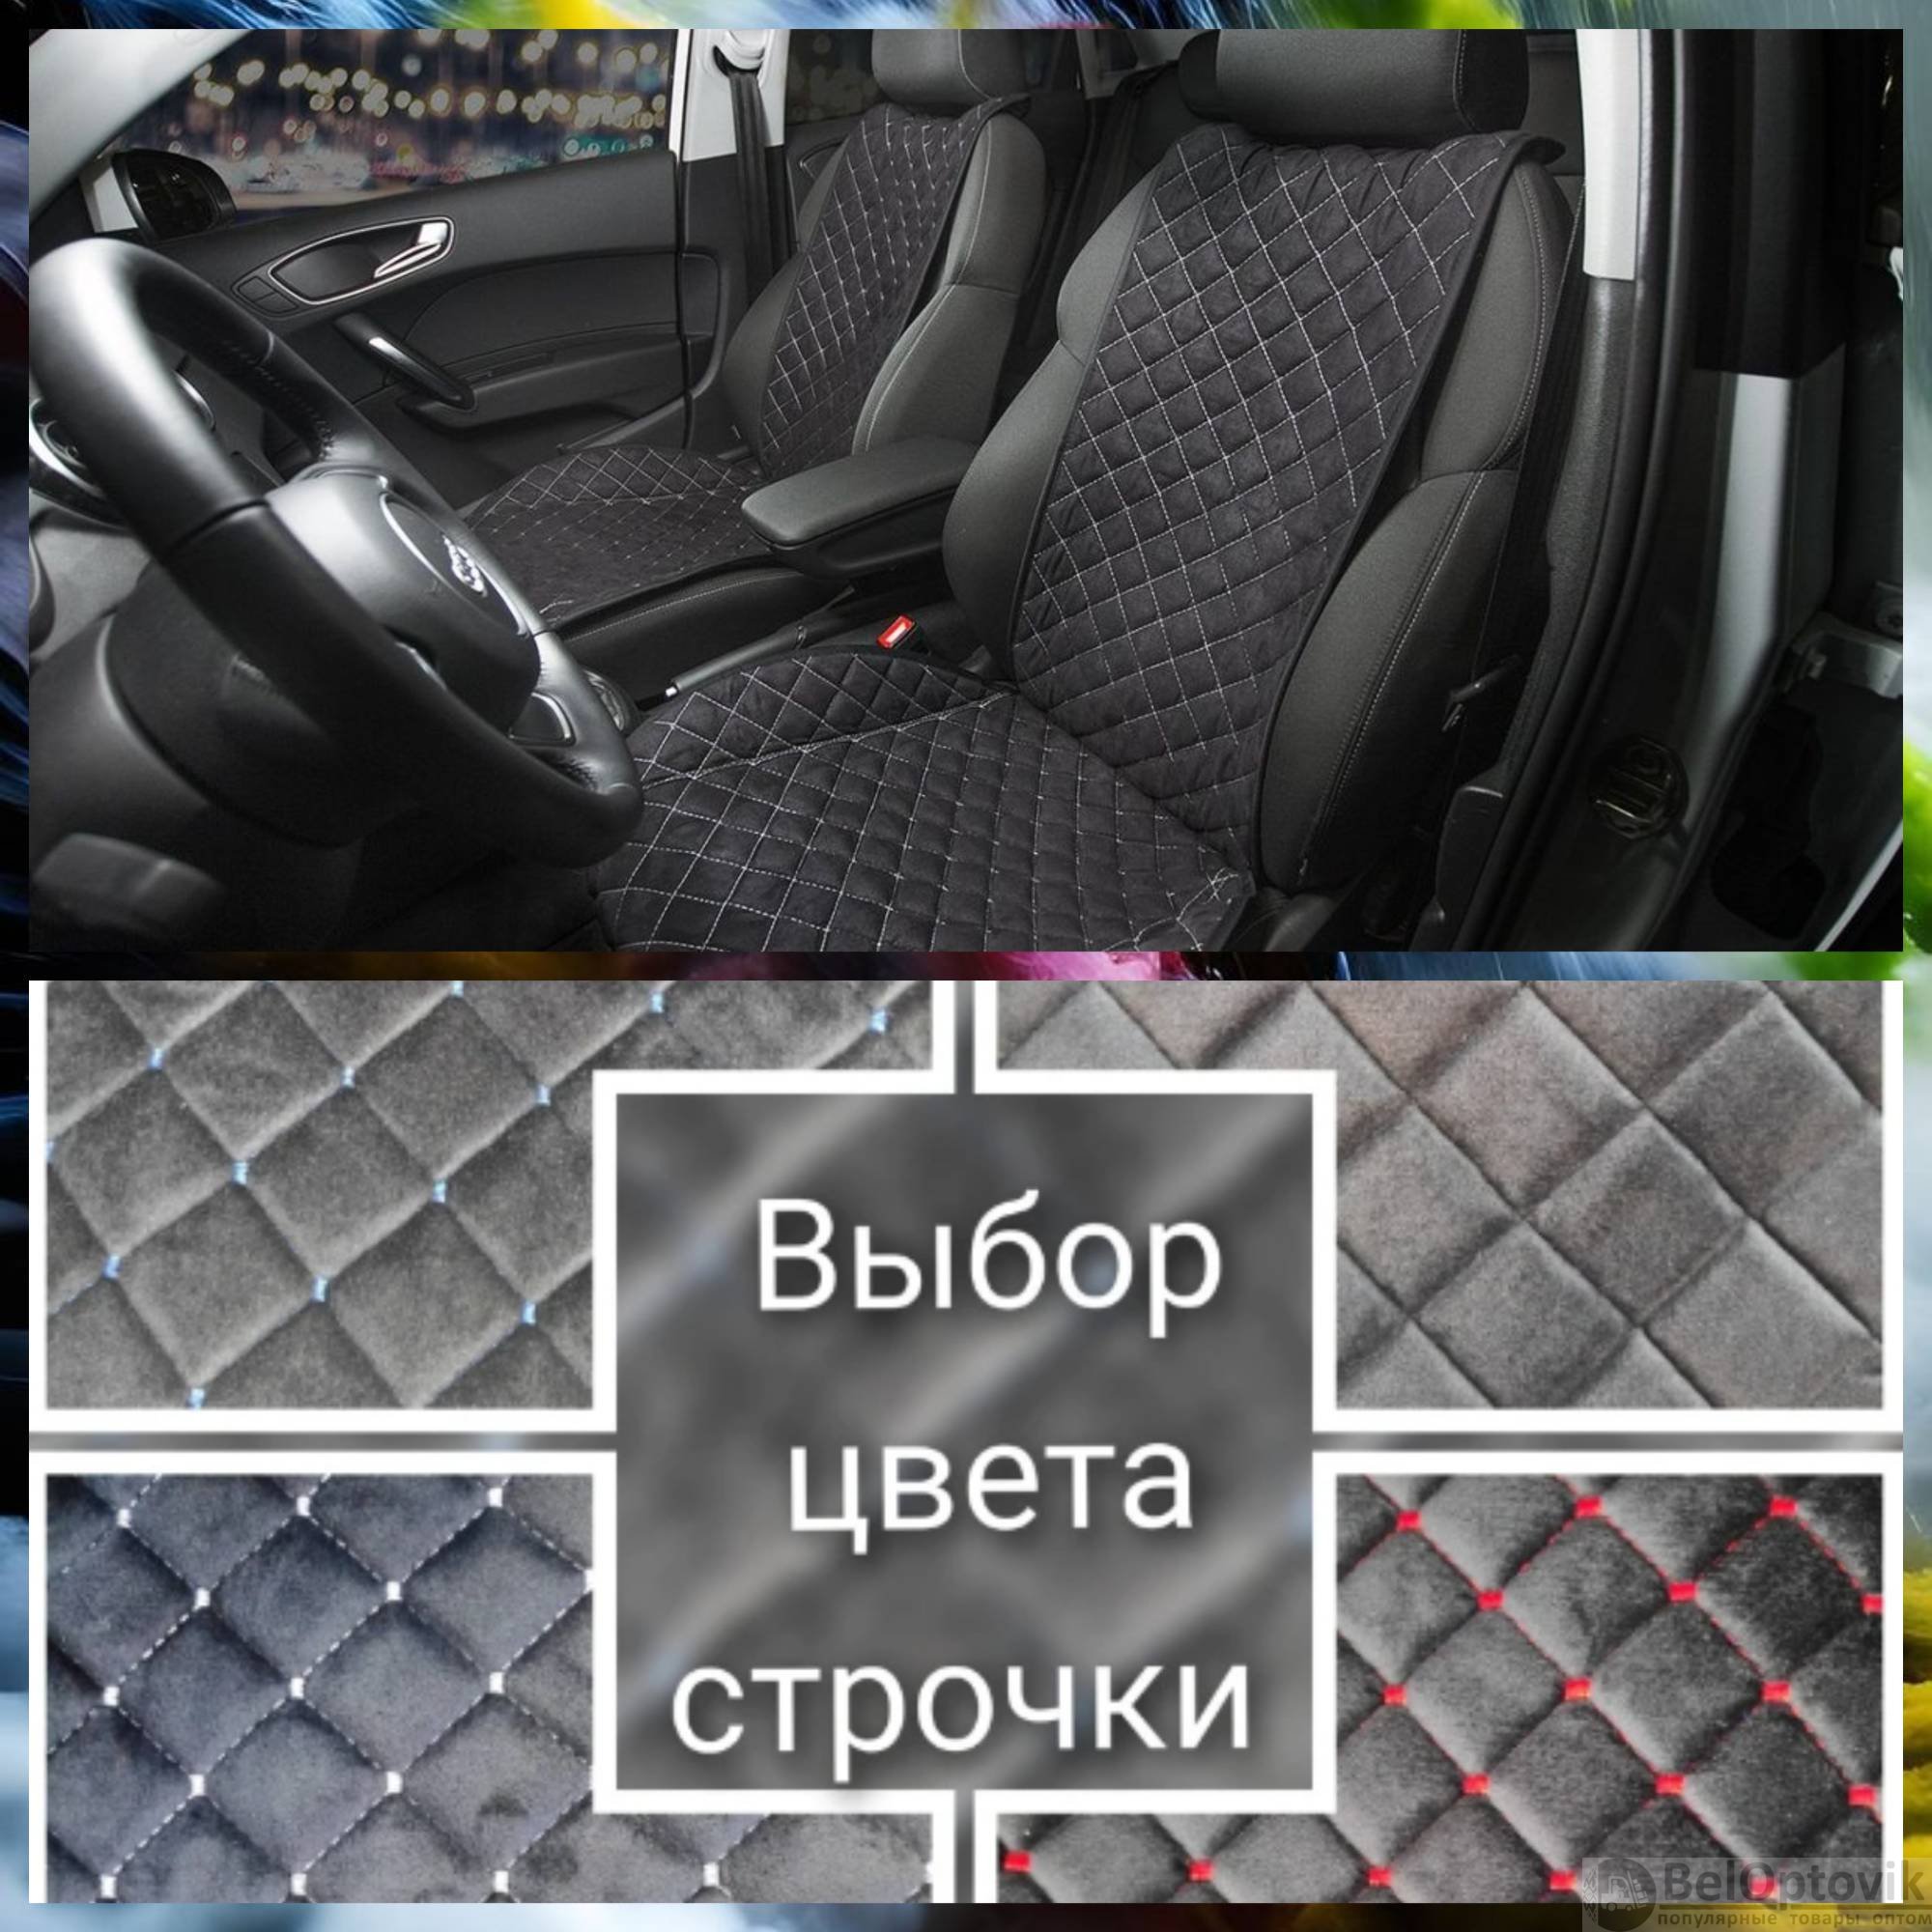 Купить накидки на сидения авто в Москве